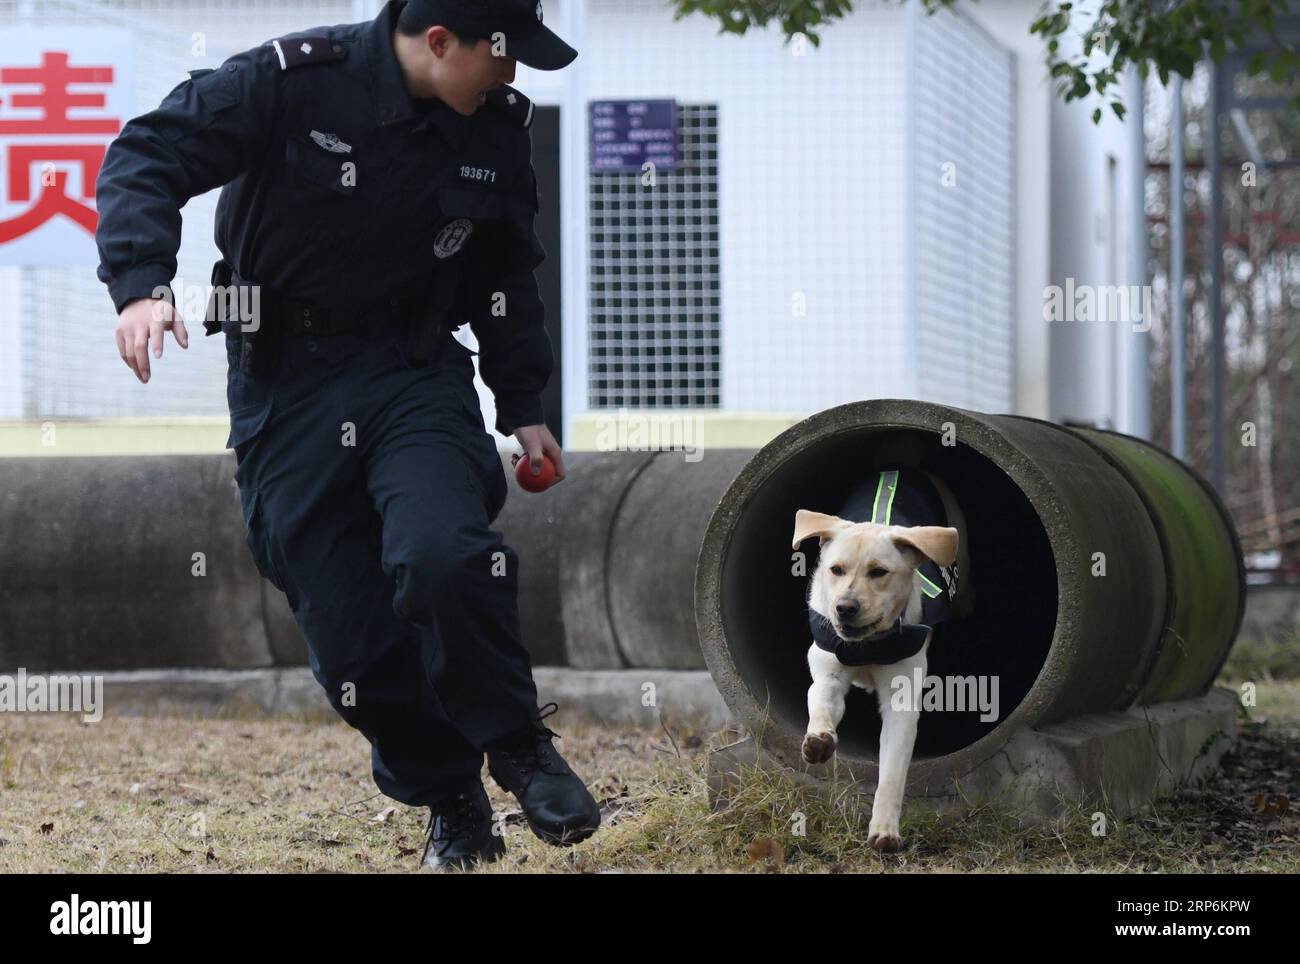 (190116) -- WUHAN, 16 janv. 2019 (Xinhua) -- le chien policier Pi te est entraîné par le policier ferroviaire de Wuhan Ding Yan à Wuhan, capitale de la province du Hubei en Chine centrale, le 15 janvier 2019. Pi te , un Labrador pour la recherche d'engins explosifs, est né en mars 2018. Il a été formé pendant 10 mois et coopérera avec le berger allemand Heng Heng pour la sécurité ferroviaire lors de la prochaine ruée de voyage du Festival du printemps. (Xinhua/Cheng min) CHINA-HUBEI-WUHAN-POLICE CHIEN-DRESSAGE (CN) PUBLICATIONxNOTxINxCHN Banque D'Images